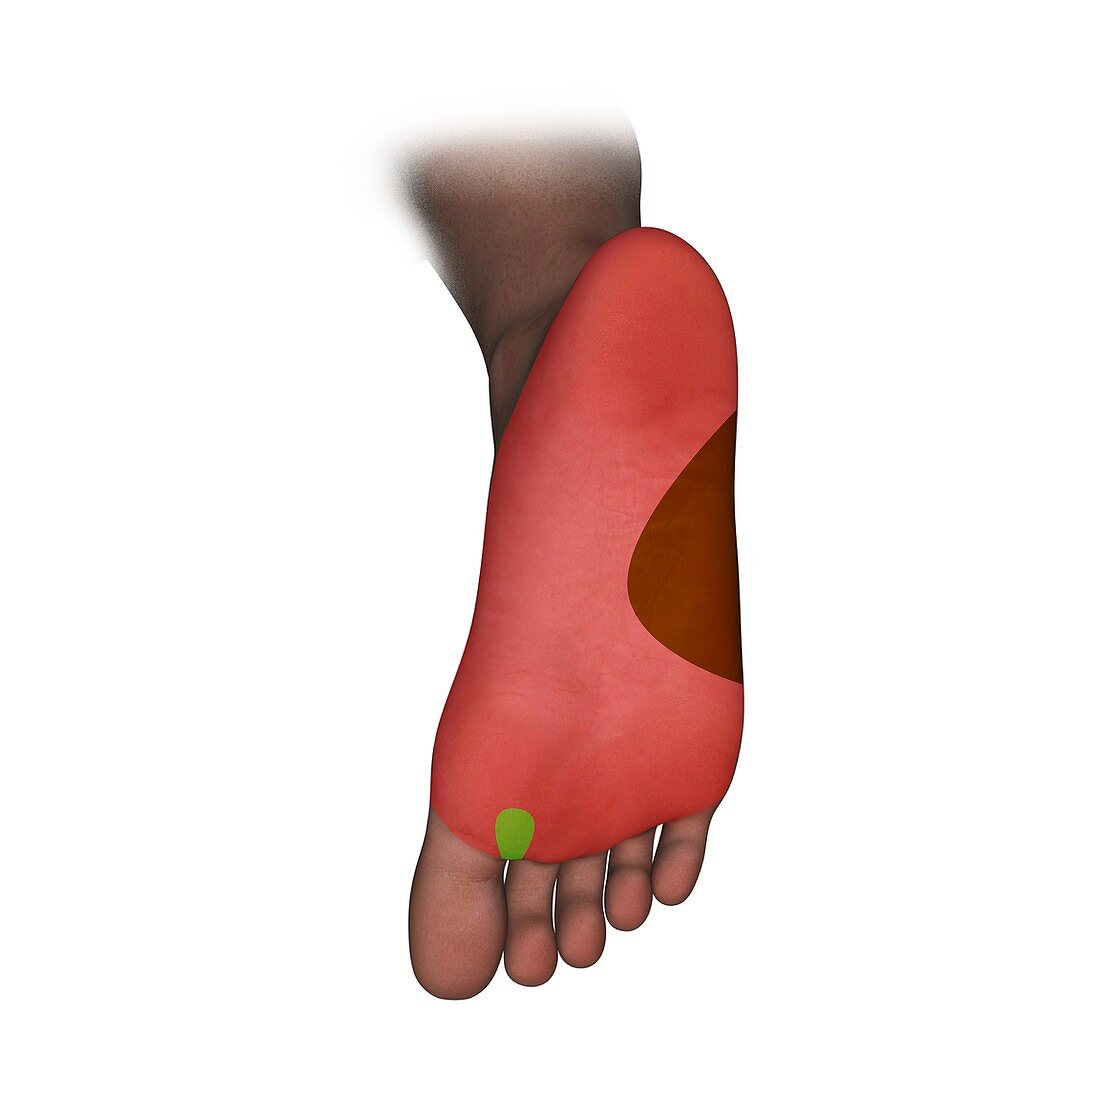 Foot plantar nerve regions,artwork